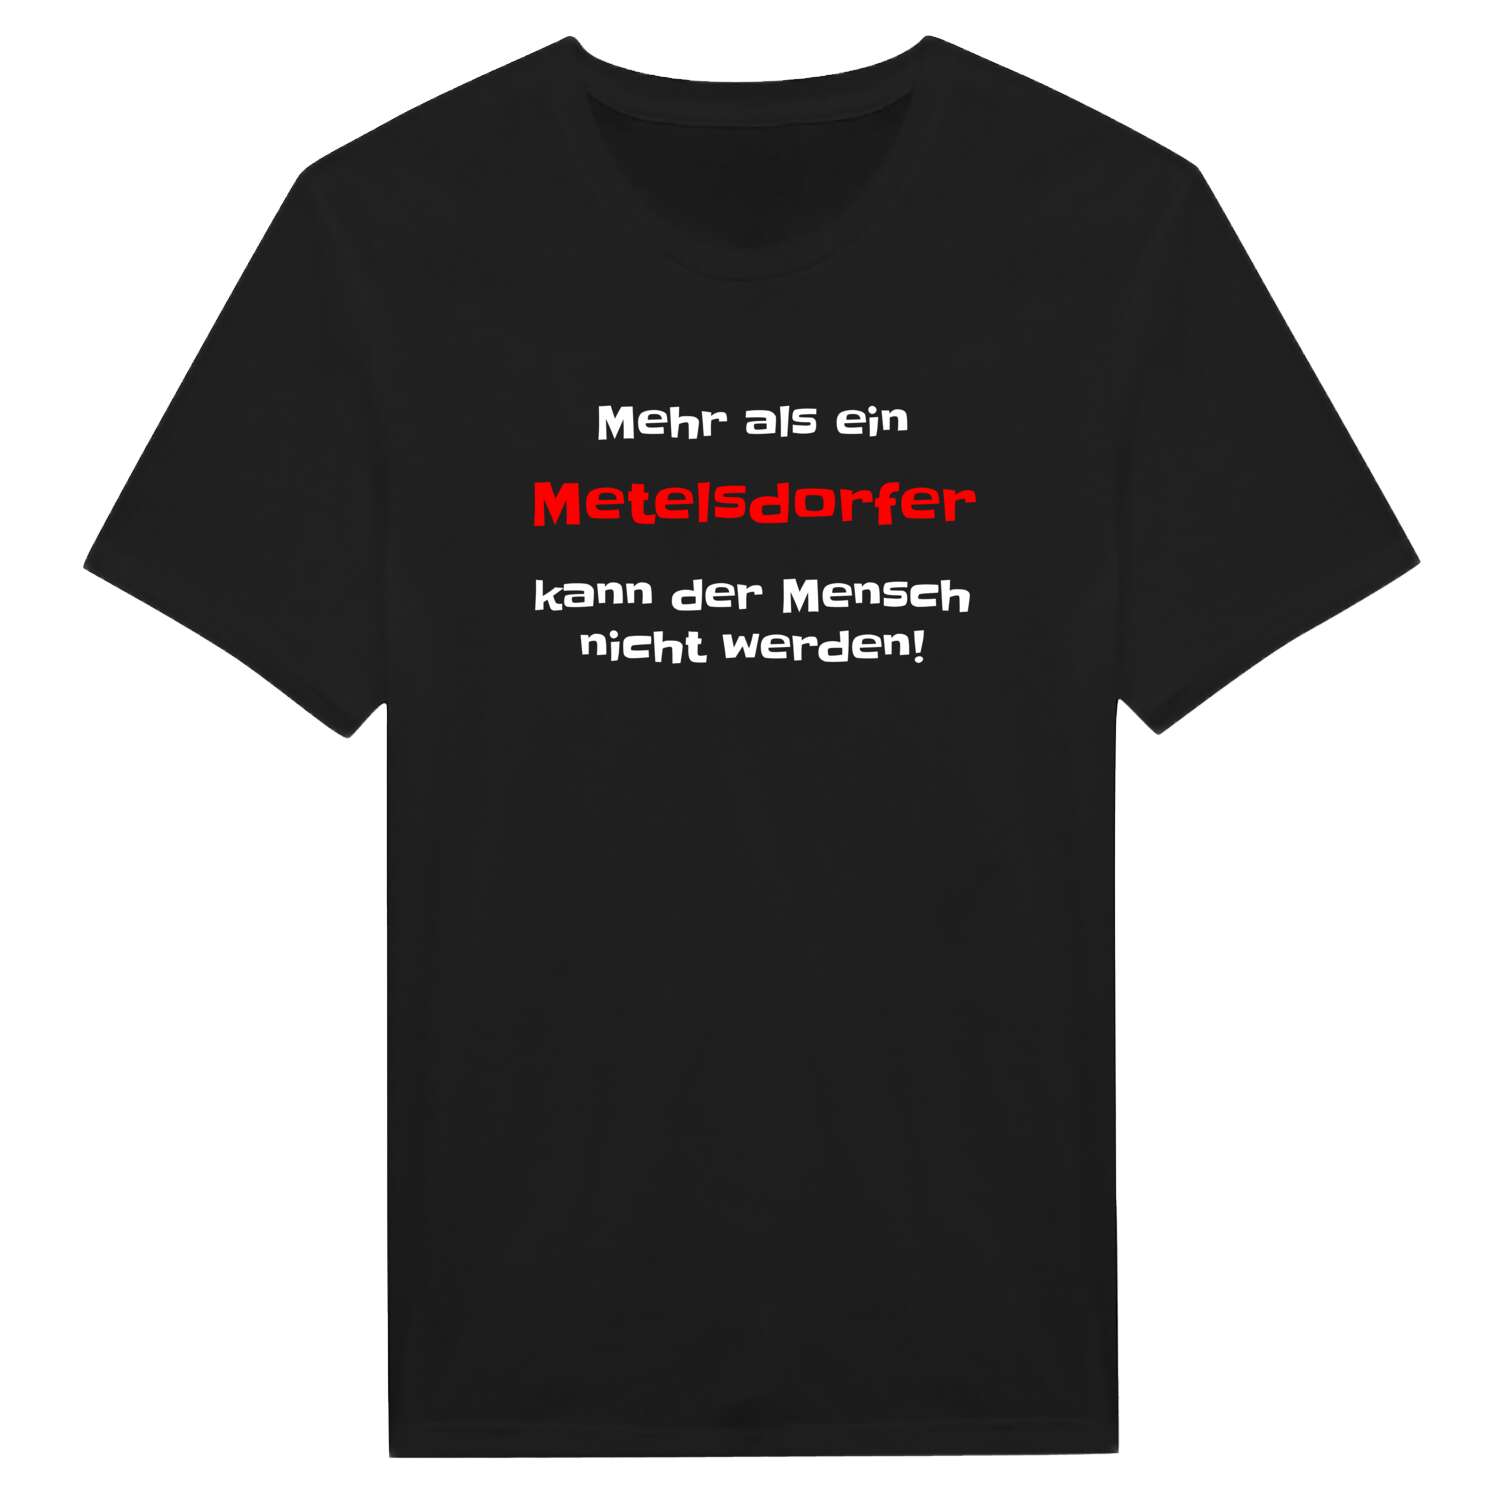 Metelsdorf T-Shirt »Mehr als ein«